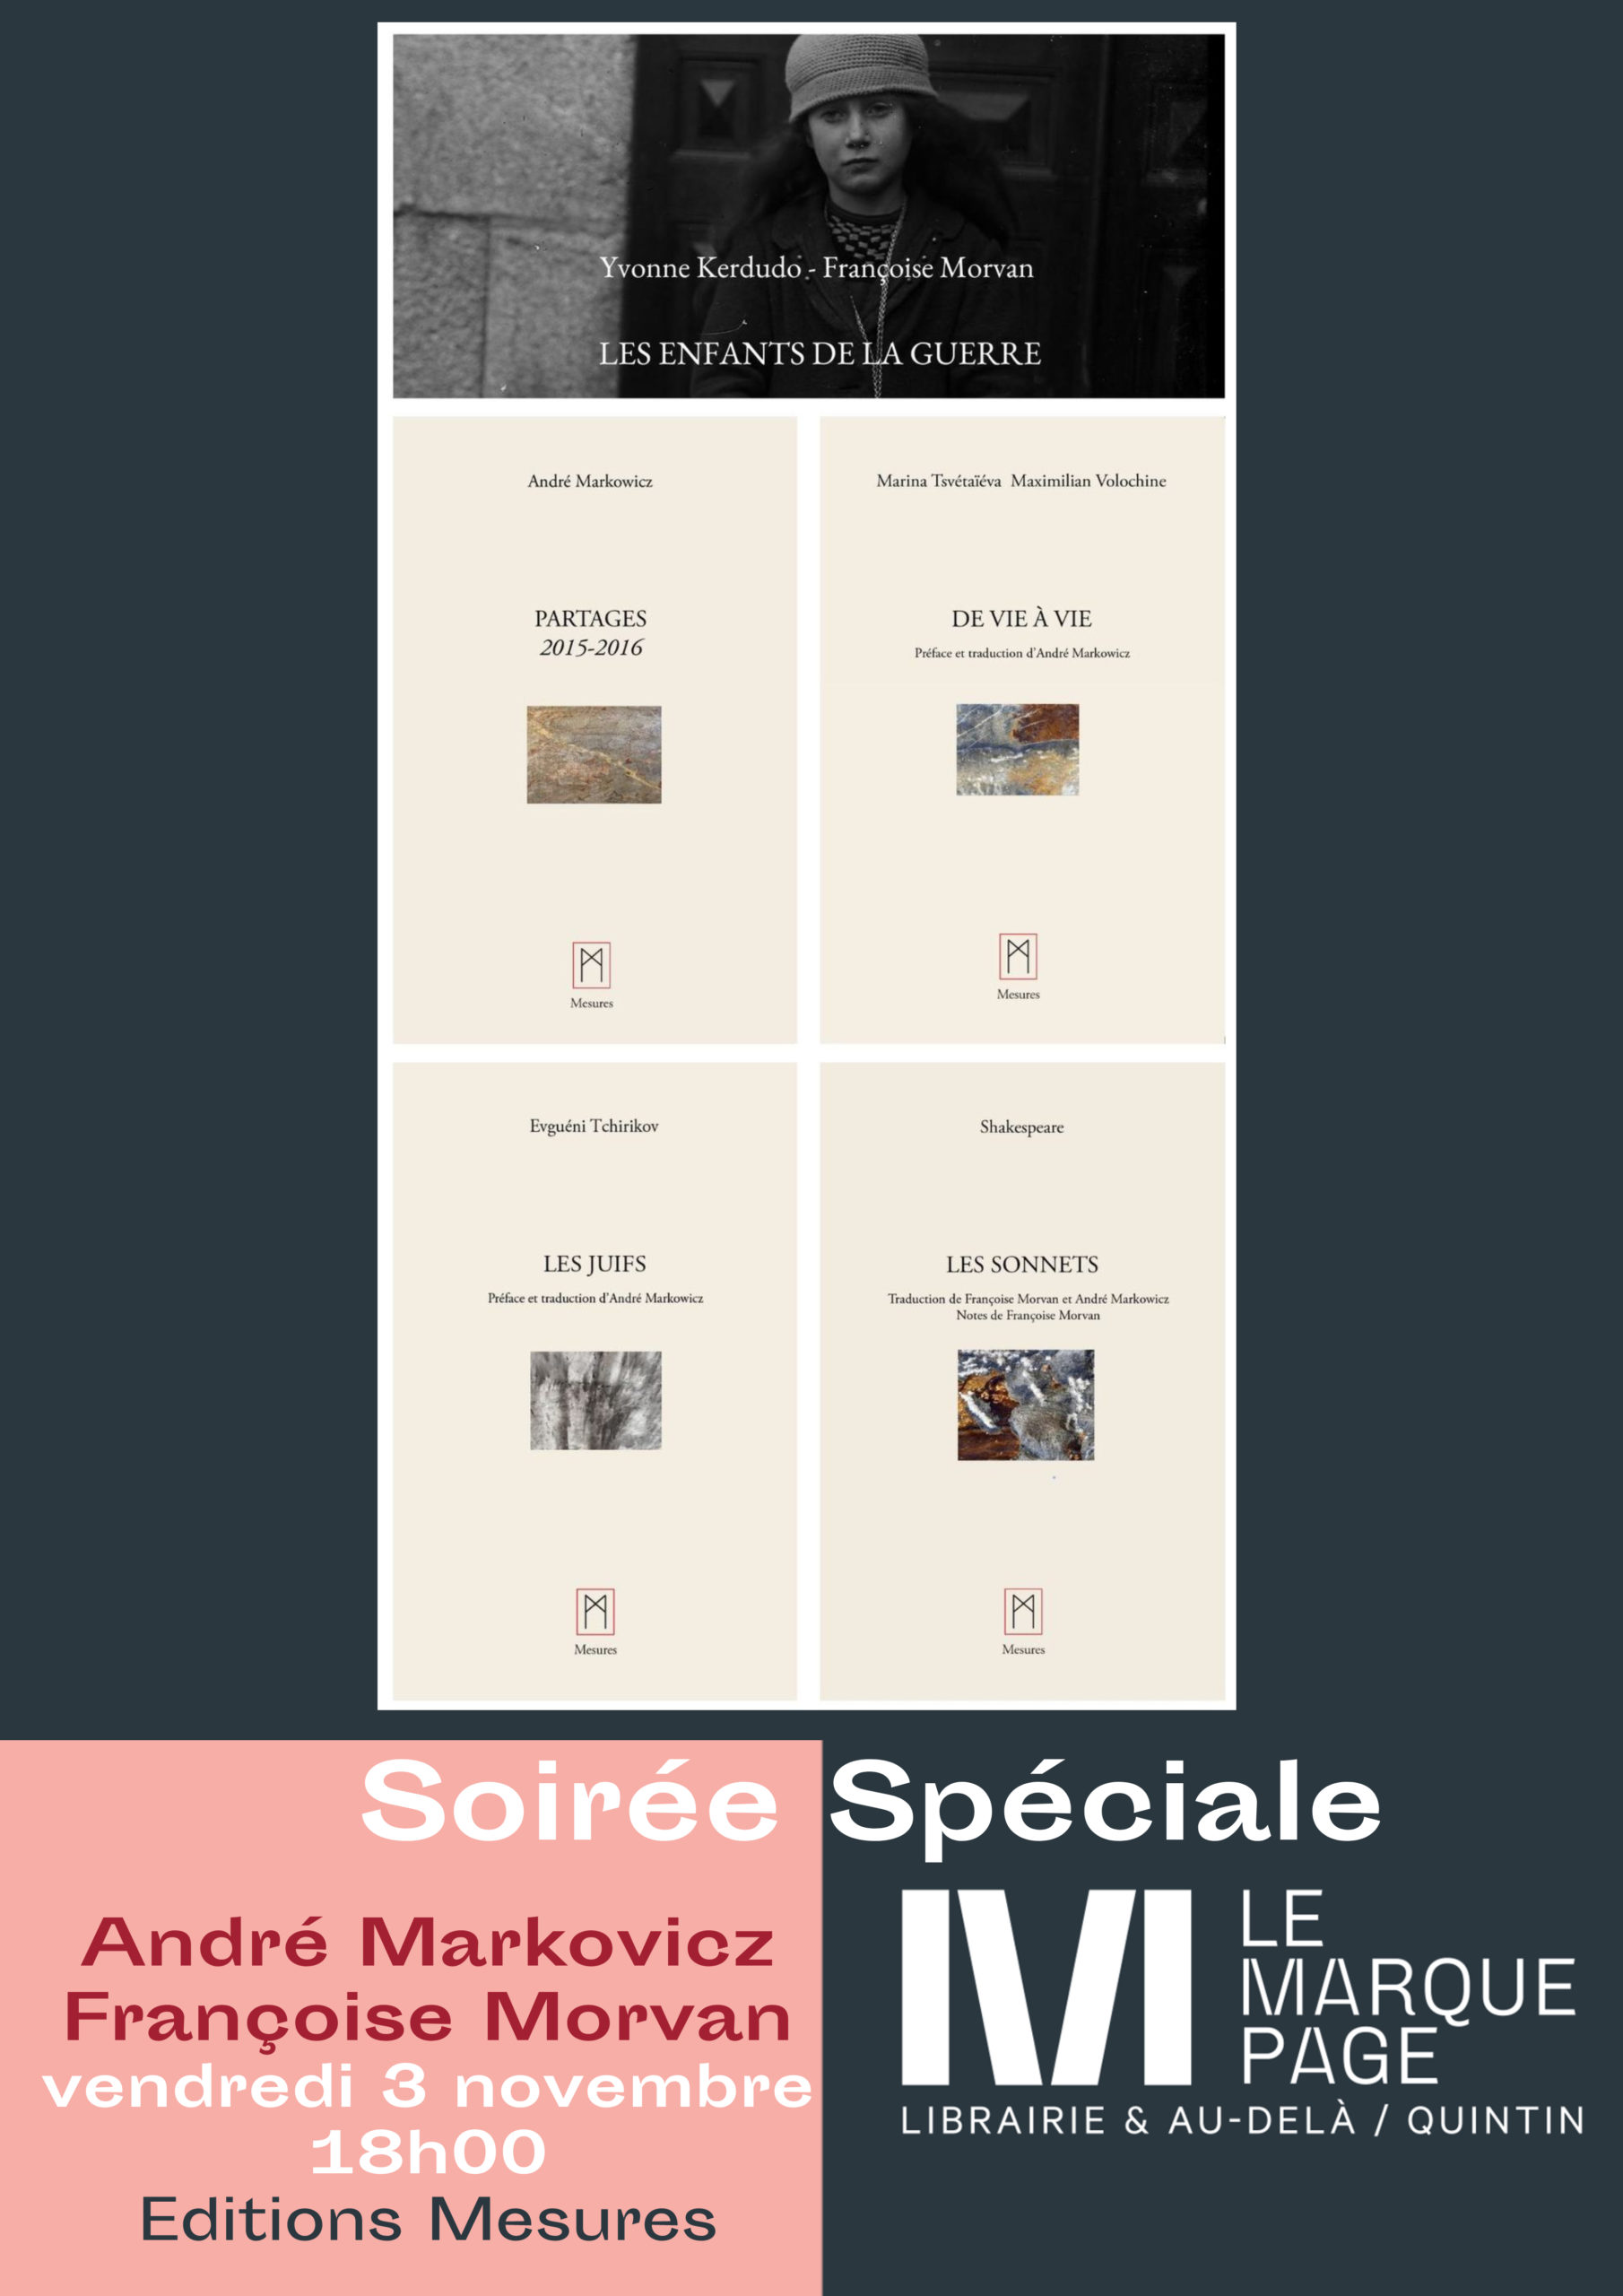 Soirée Spéciale Editions « Mesures »